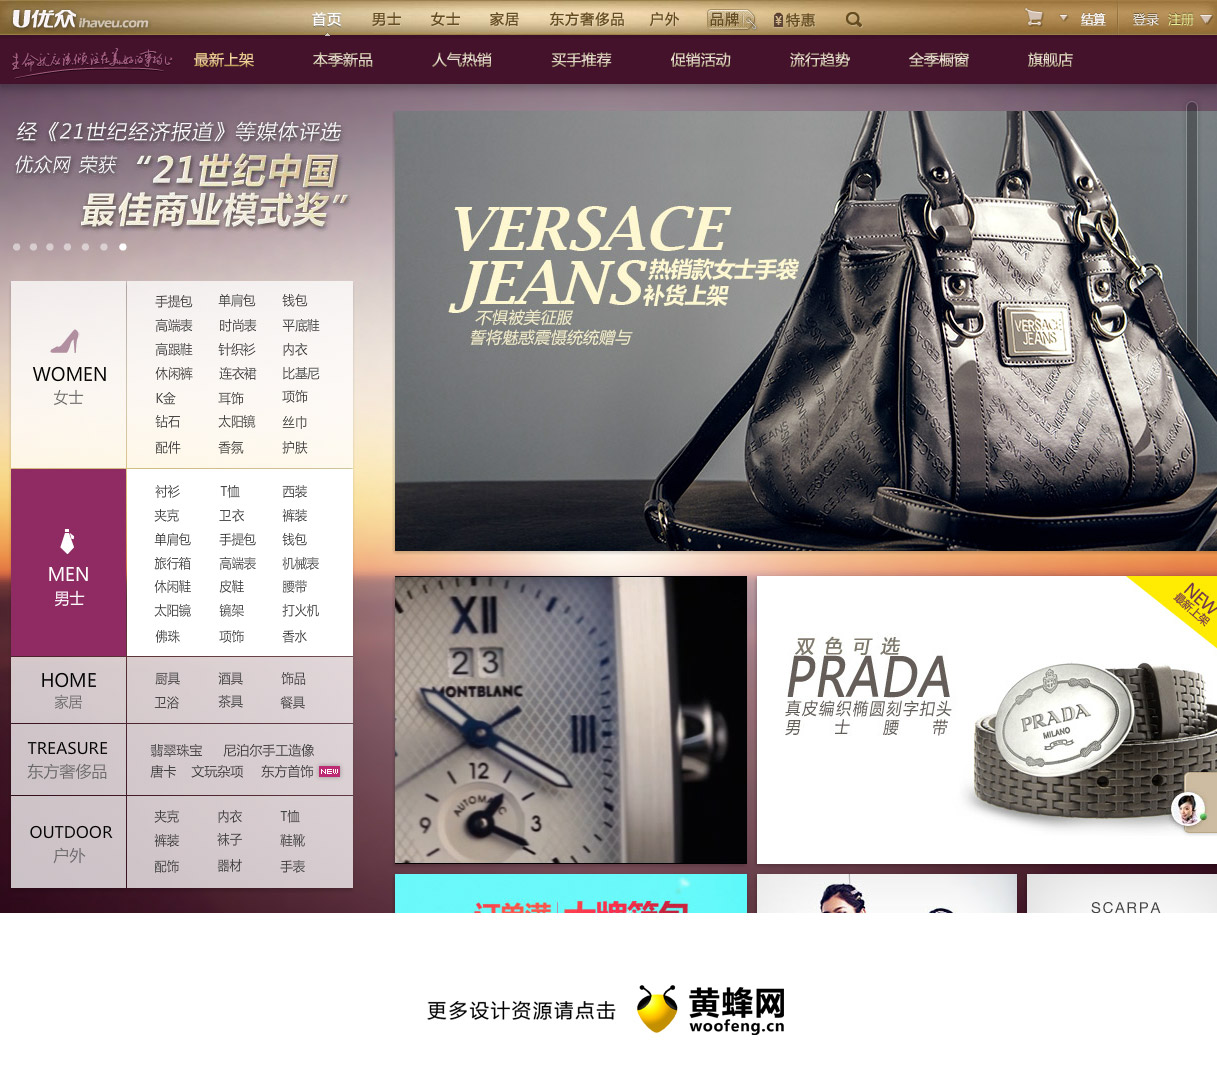 优众-全球顶级时尚奢侈品在线零售商，来源自黄蜂网https://woofeng.cn/web/